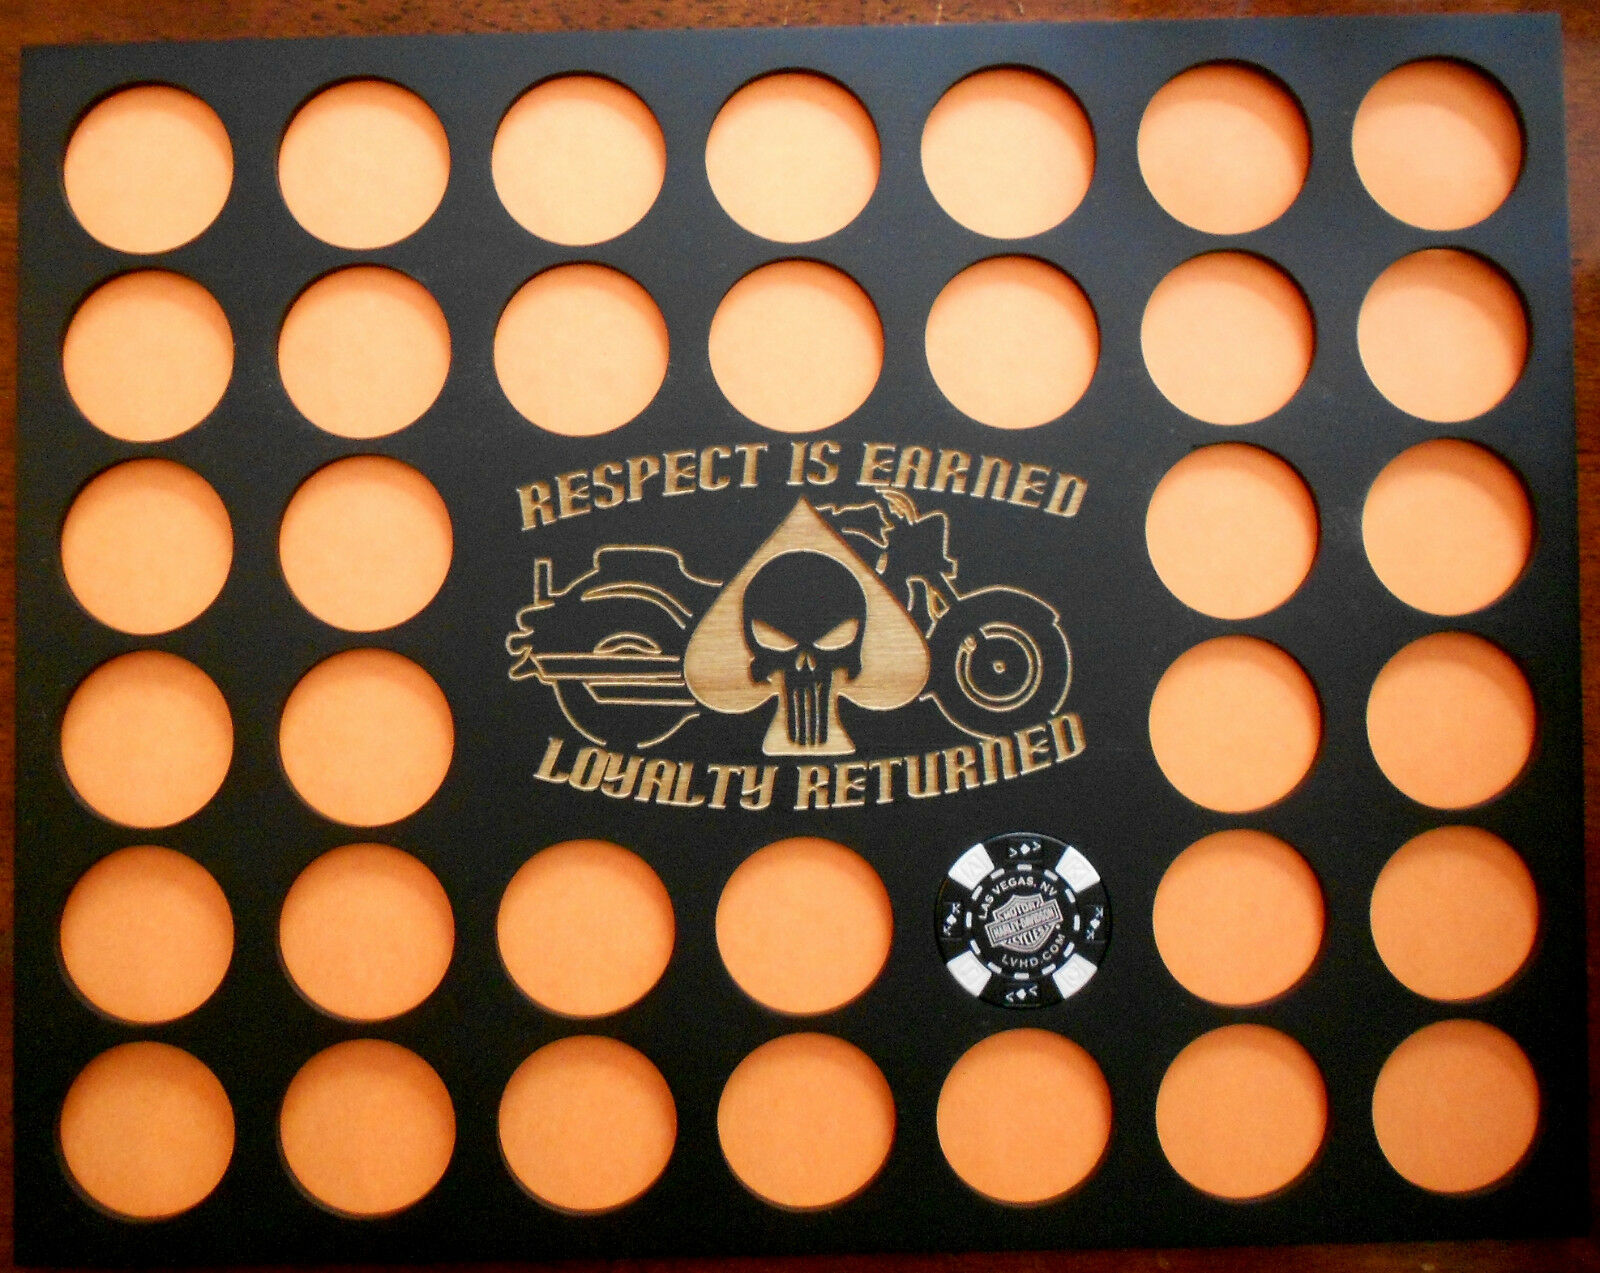 36 Poker Chip Display Frame Insert For Harley Davidson/casino Punisher/respect